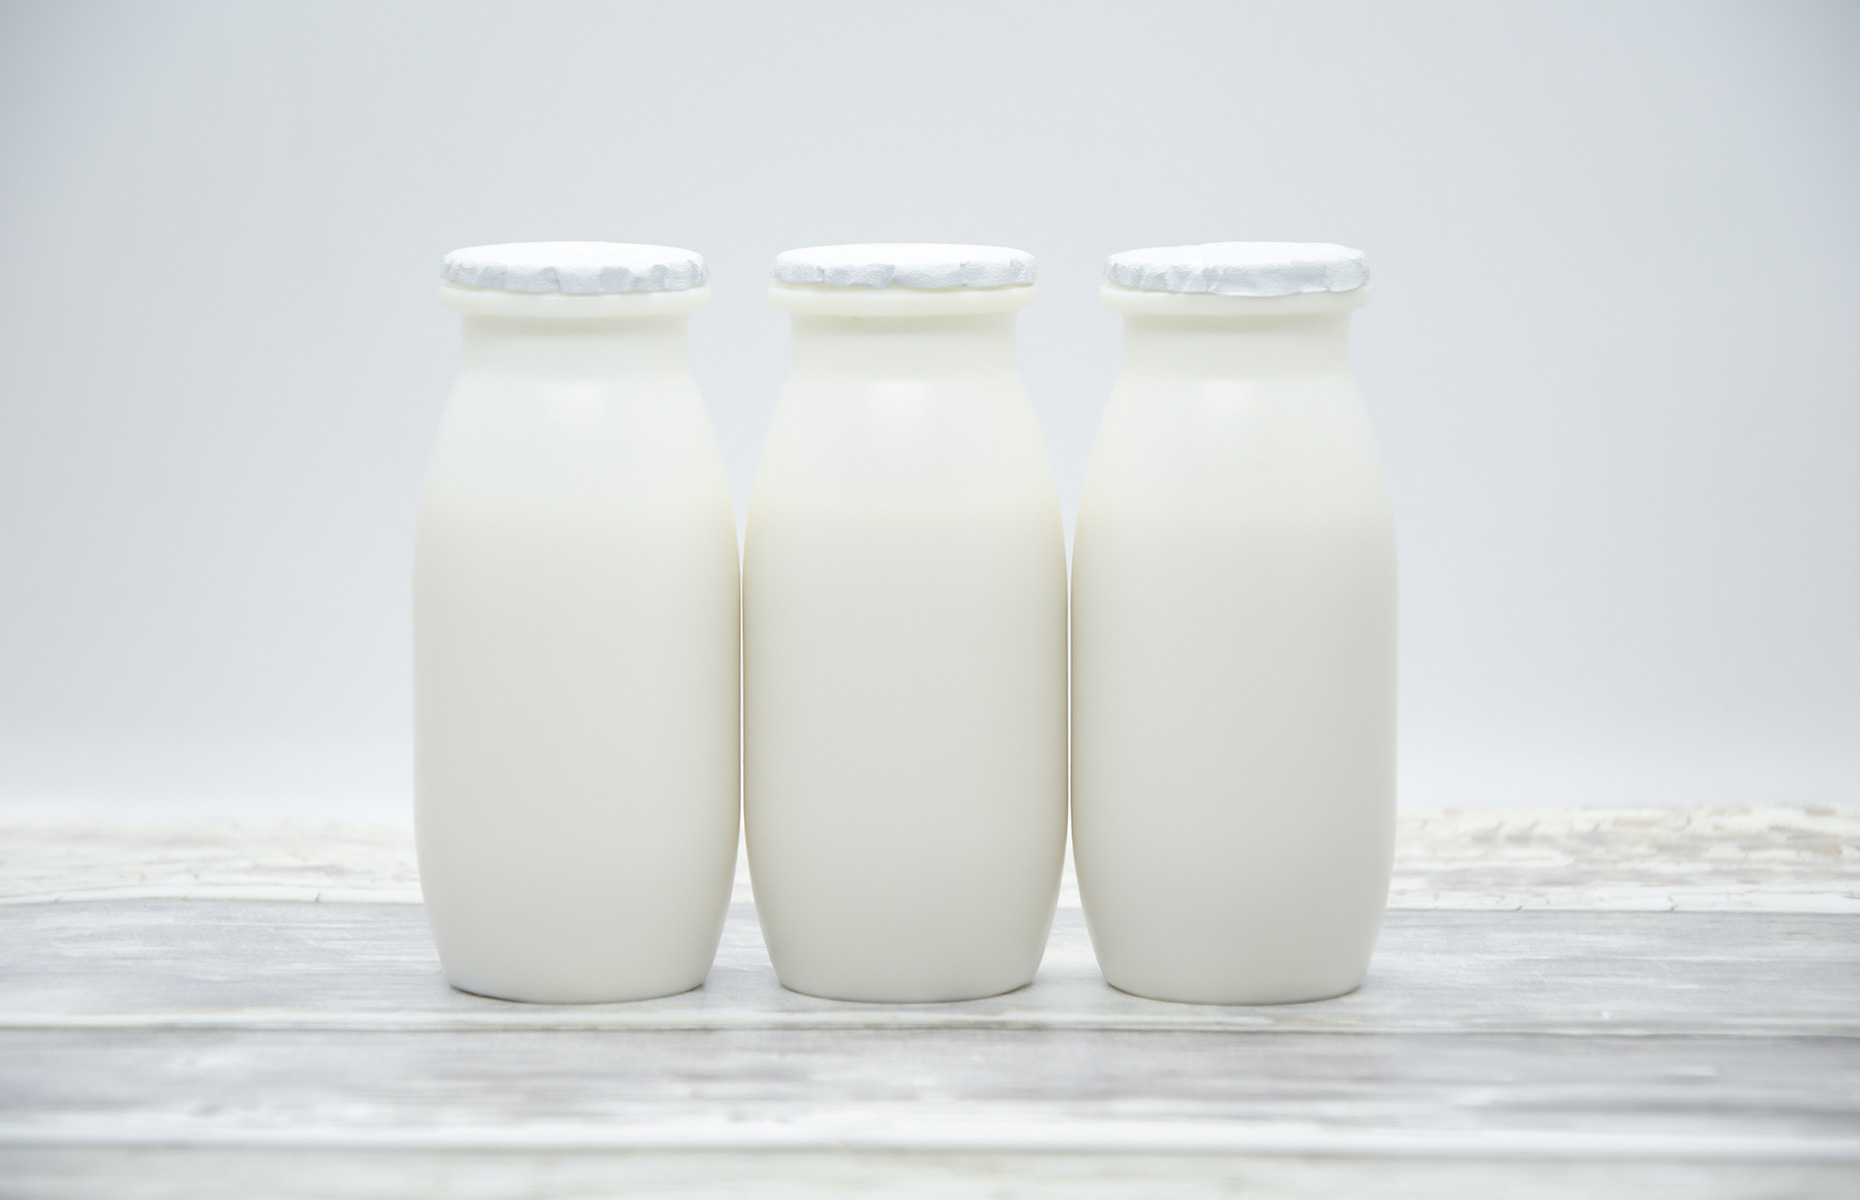 Probiotic yogurt (Image: Vetertravel/Shutterstock)